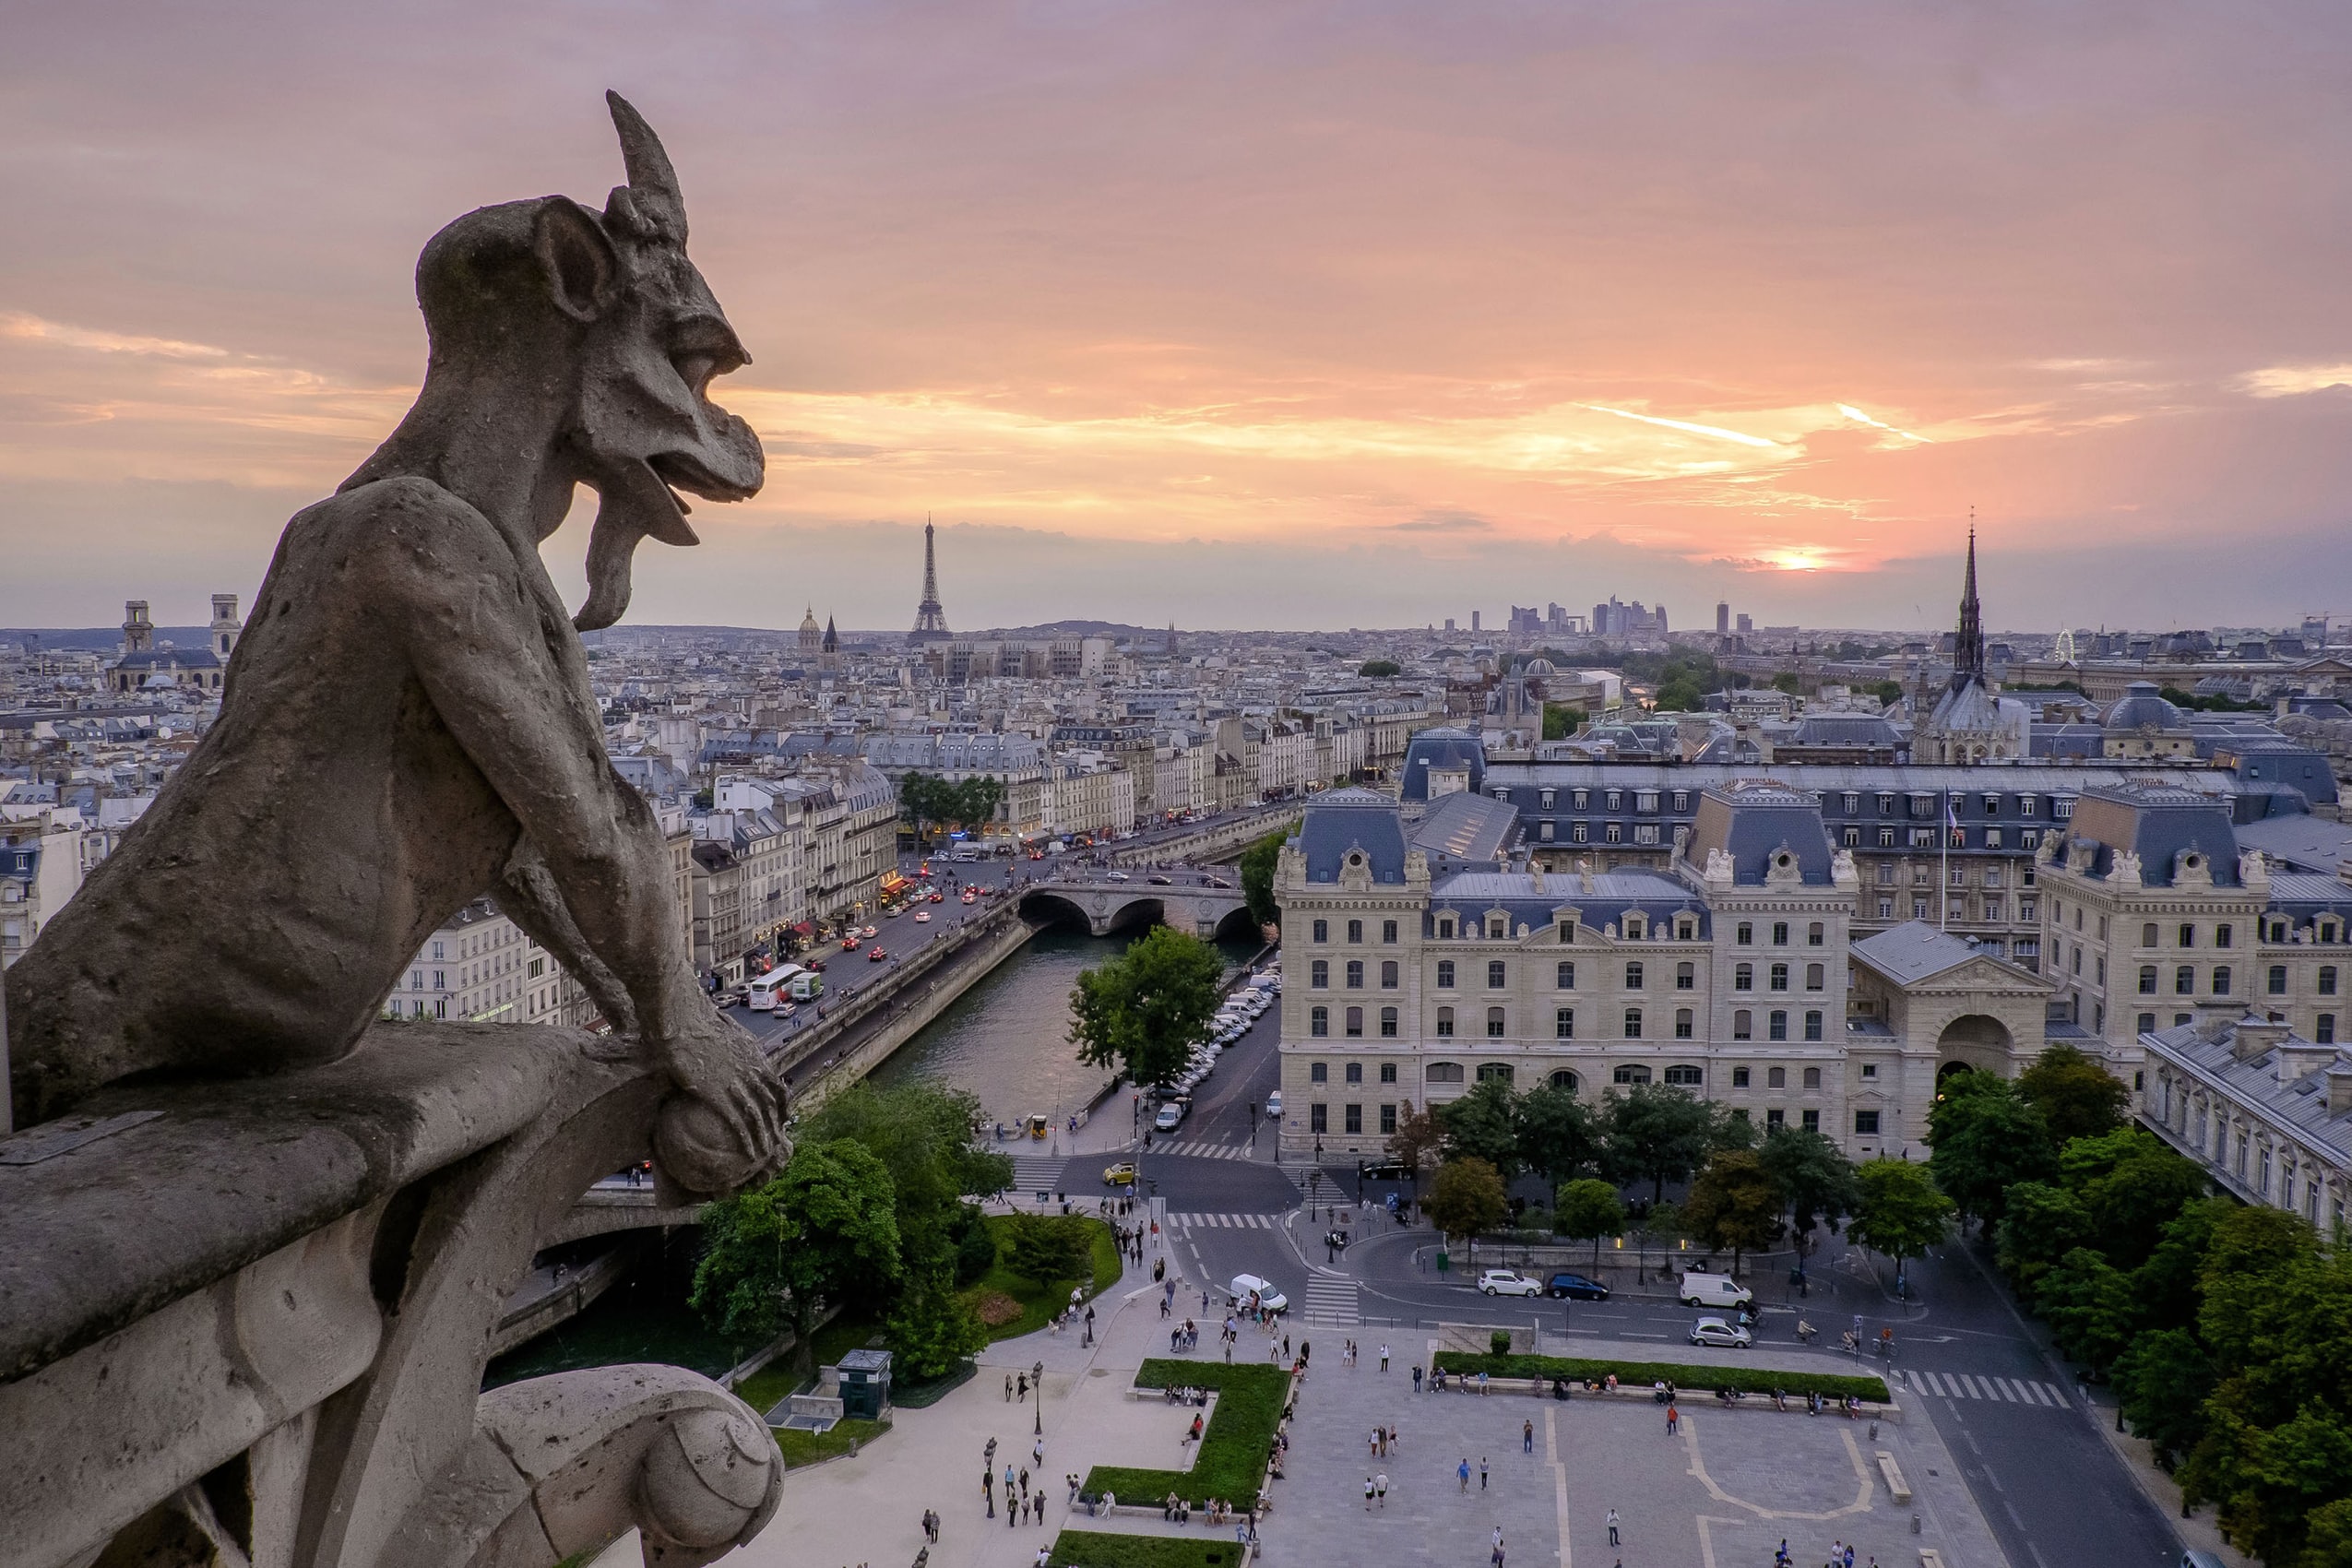 来自巴黎圣母院屋顶的照片显示了一个滴水嘴兽